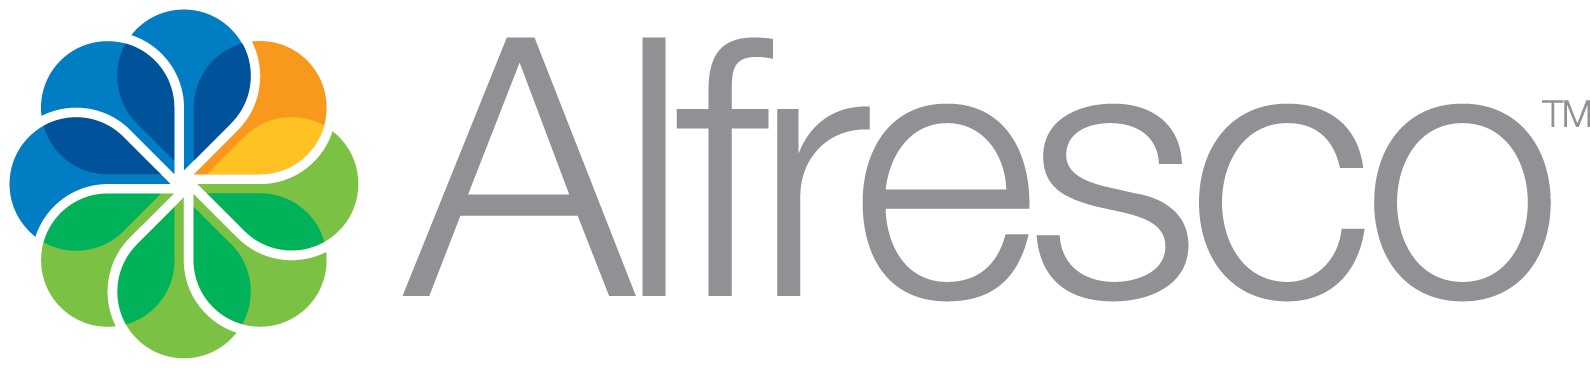 Alfresco Enterprise Content Management